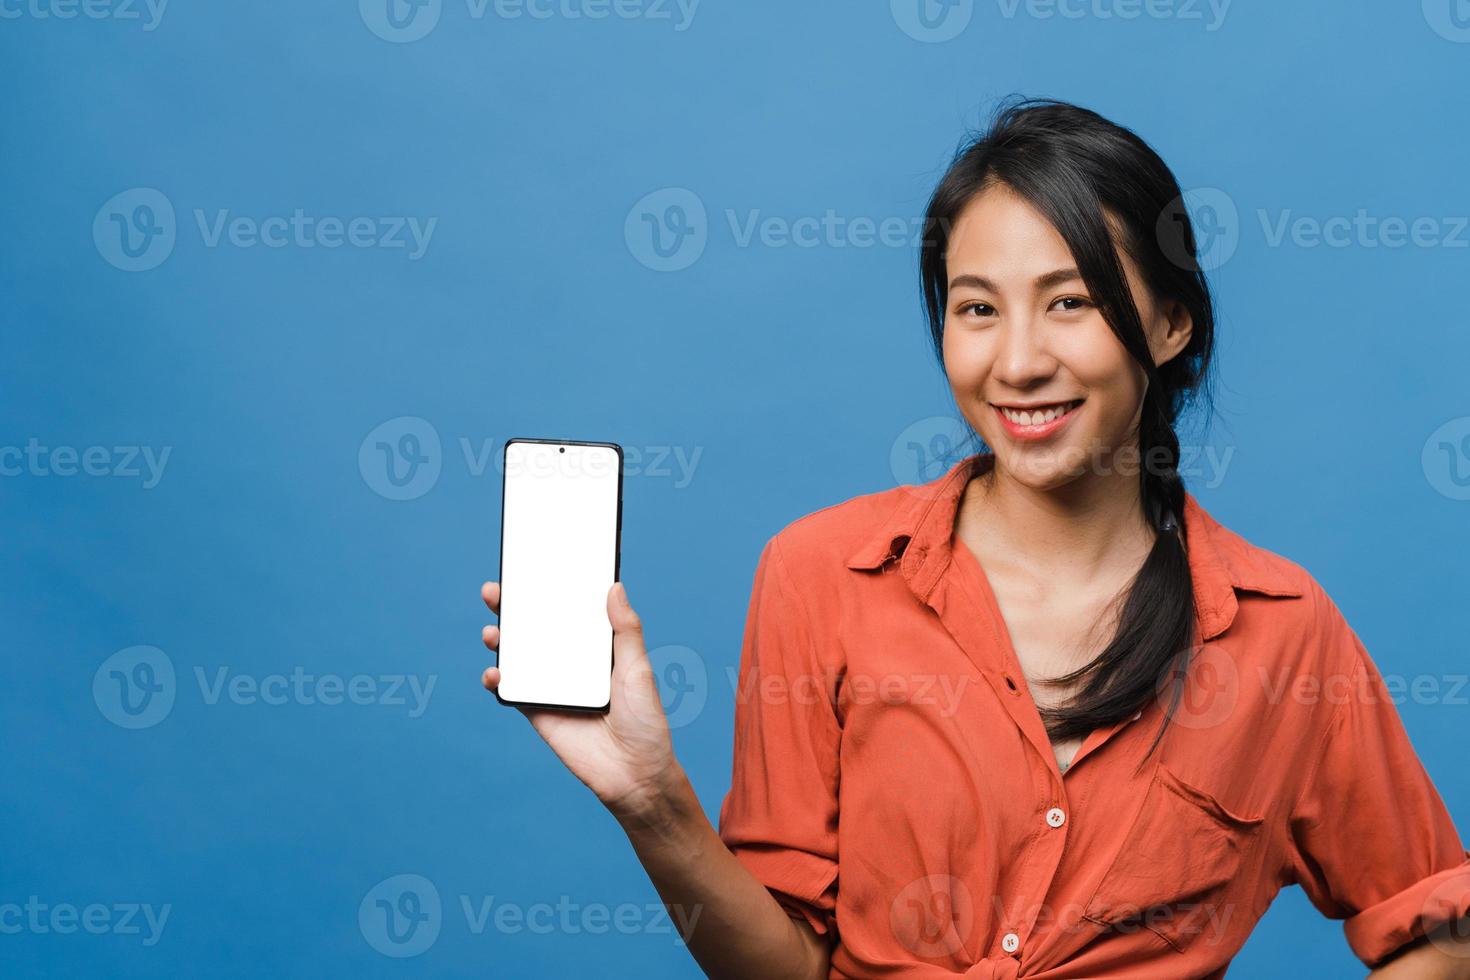 jovem asiática mostra tela vazia do smartphone com expressão positiva, sorri amplamente, vestida com roupas casuais, sentindo felicidade sobre fundo azul. telefone celular com tela branca na mão feminina. foto